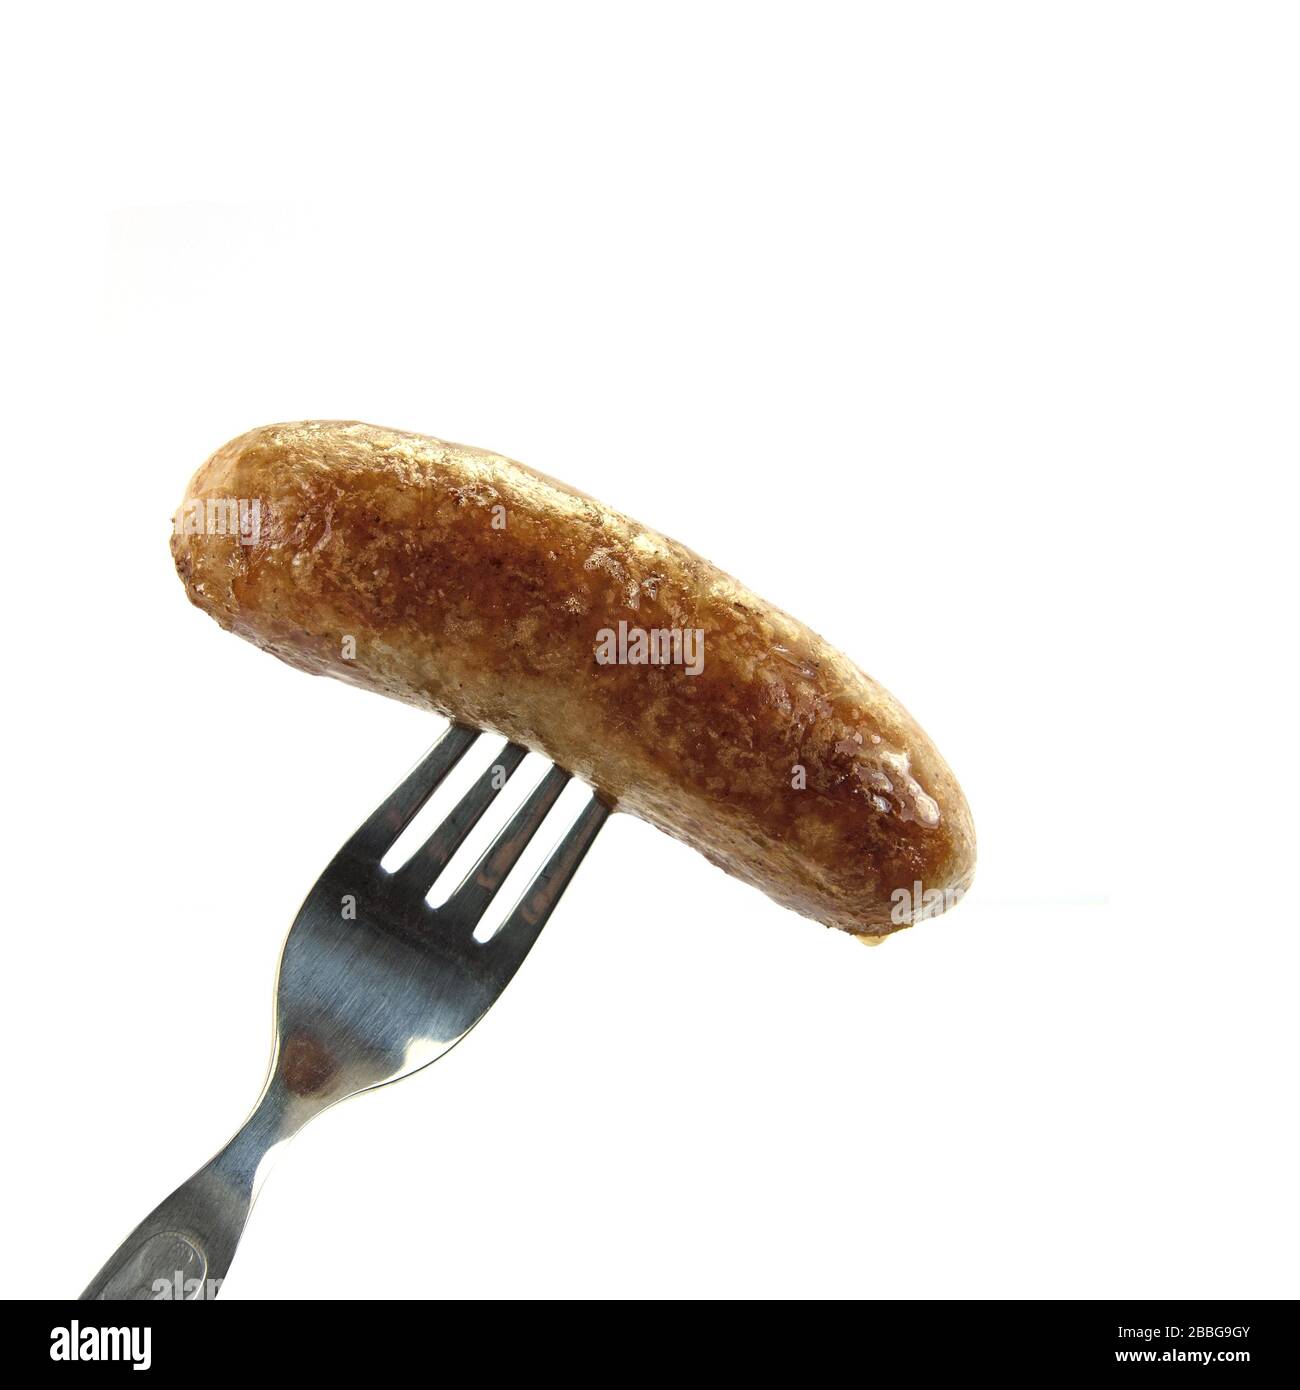 La saucisse frite est brossée sur une fourchette Banque D'Images